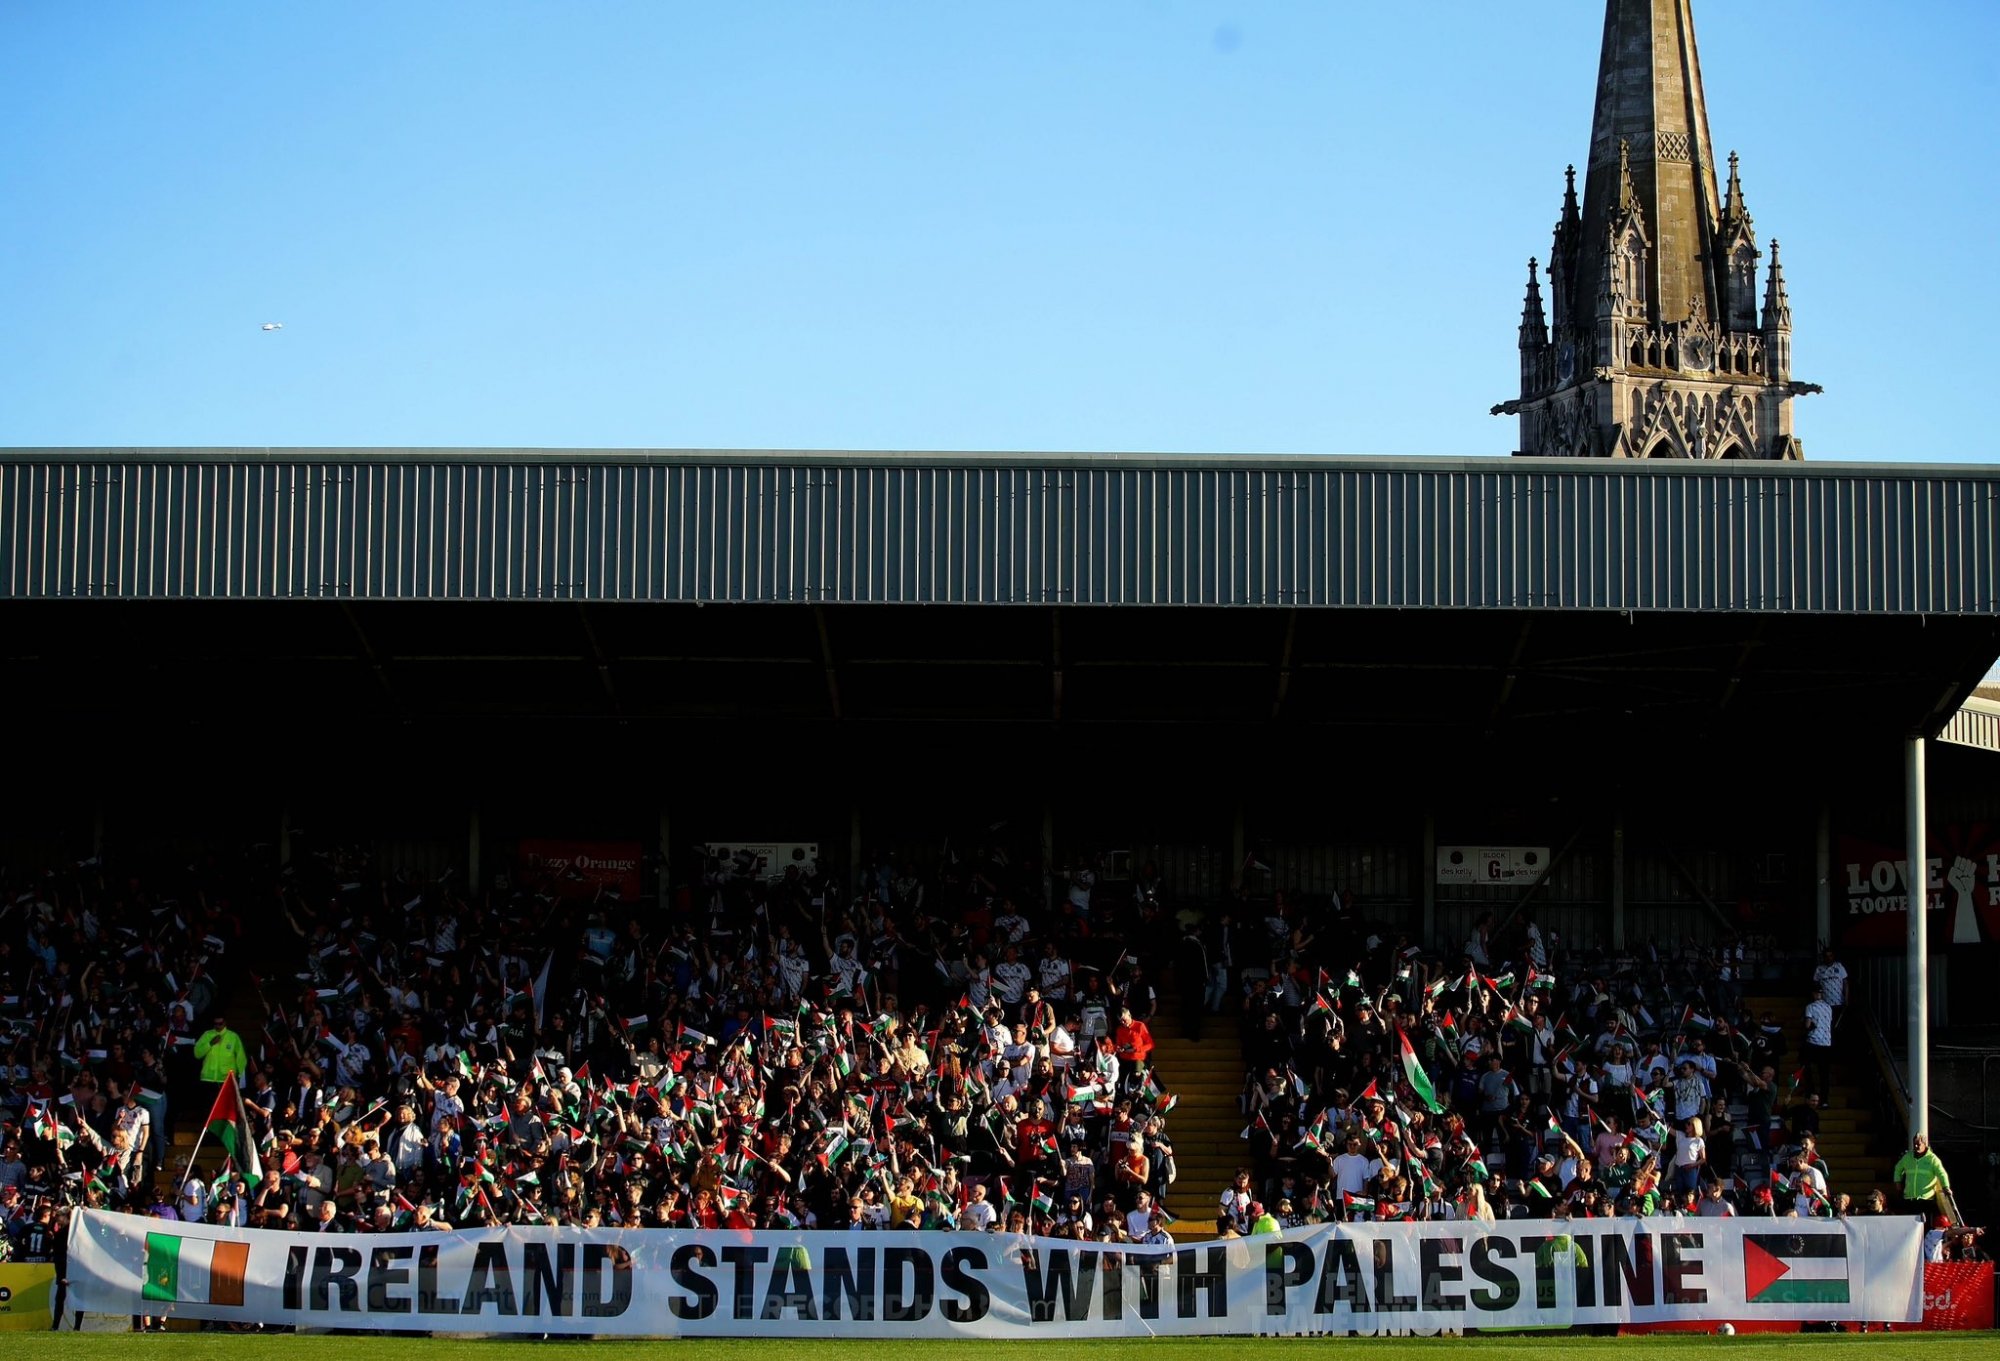 Ιρλανδία: Όταν τα ξωτικά από το Δουβλίνο συνάντησαν τις μαχήτριες της Παλαιστίνης